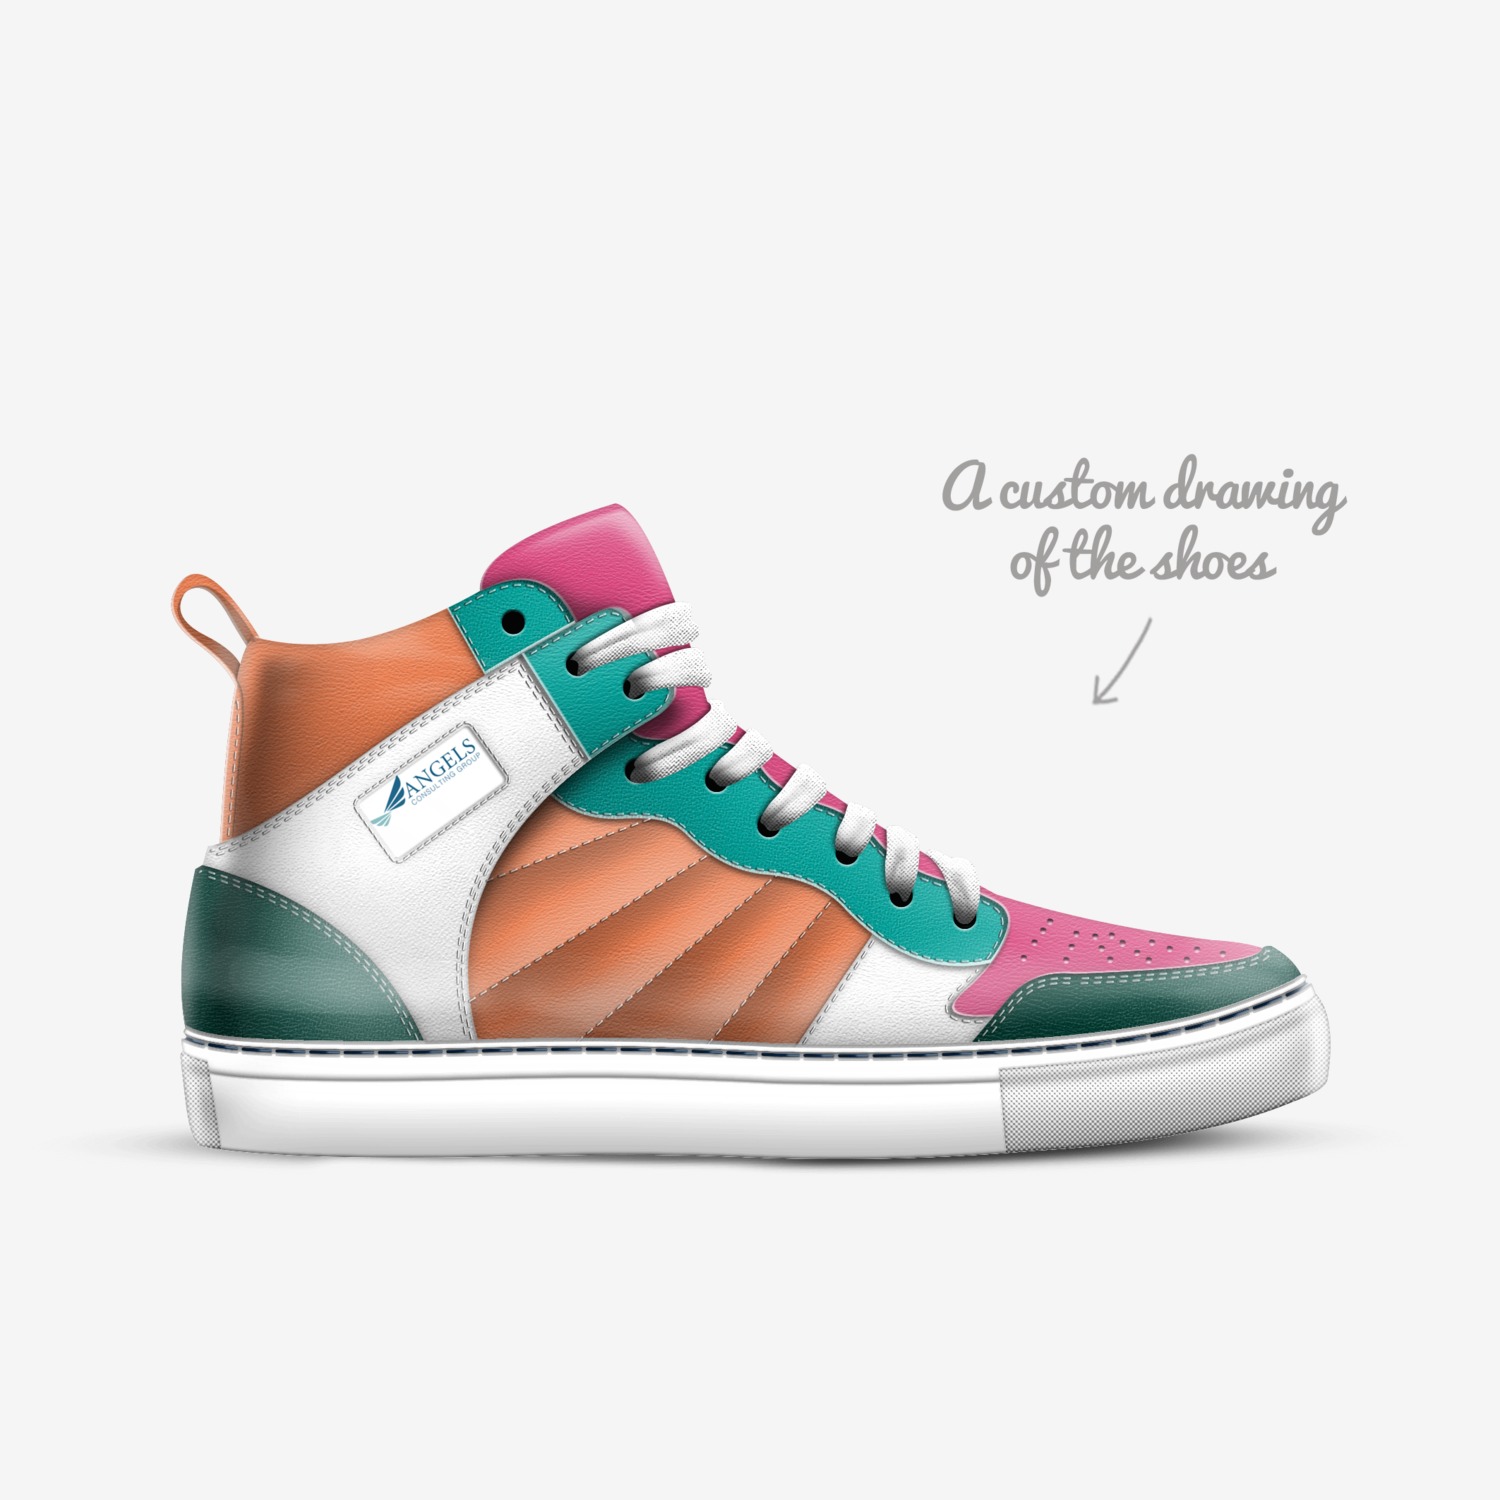 Dildo | A Custom Shoe concept by Cody